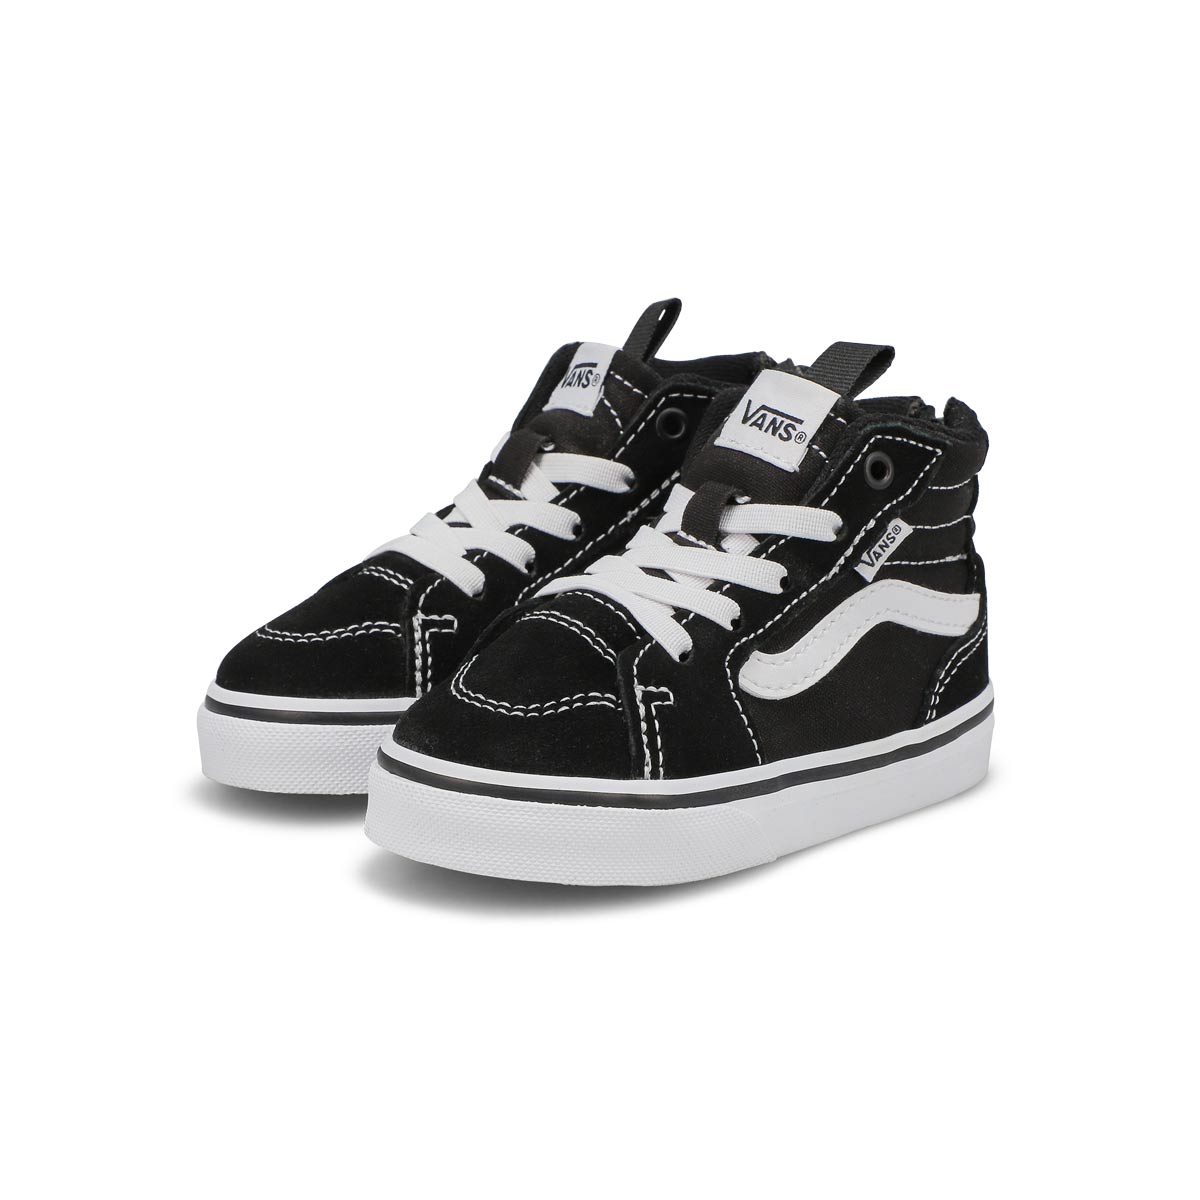 Vans Infants' Filmore Hi Zip Sneaker - Black/ | SoftMoc.com